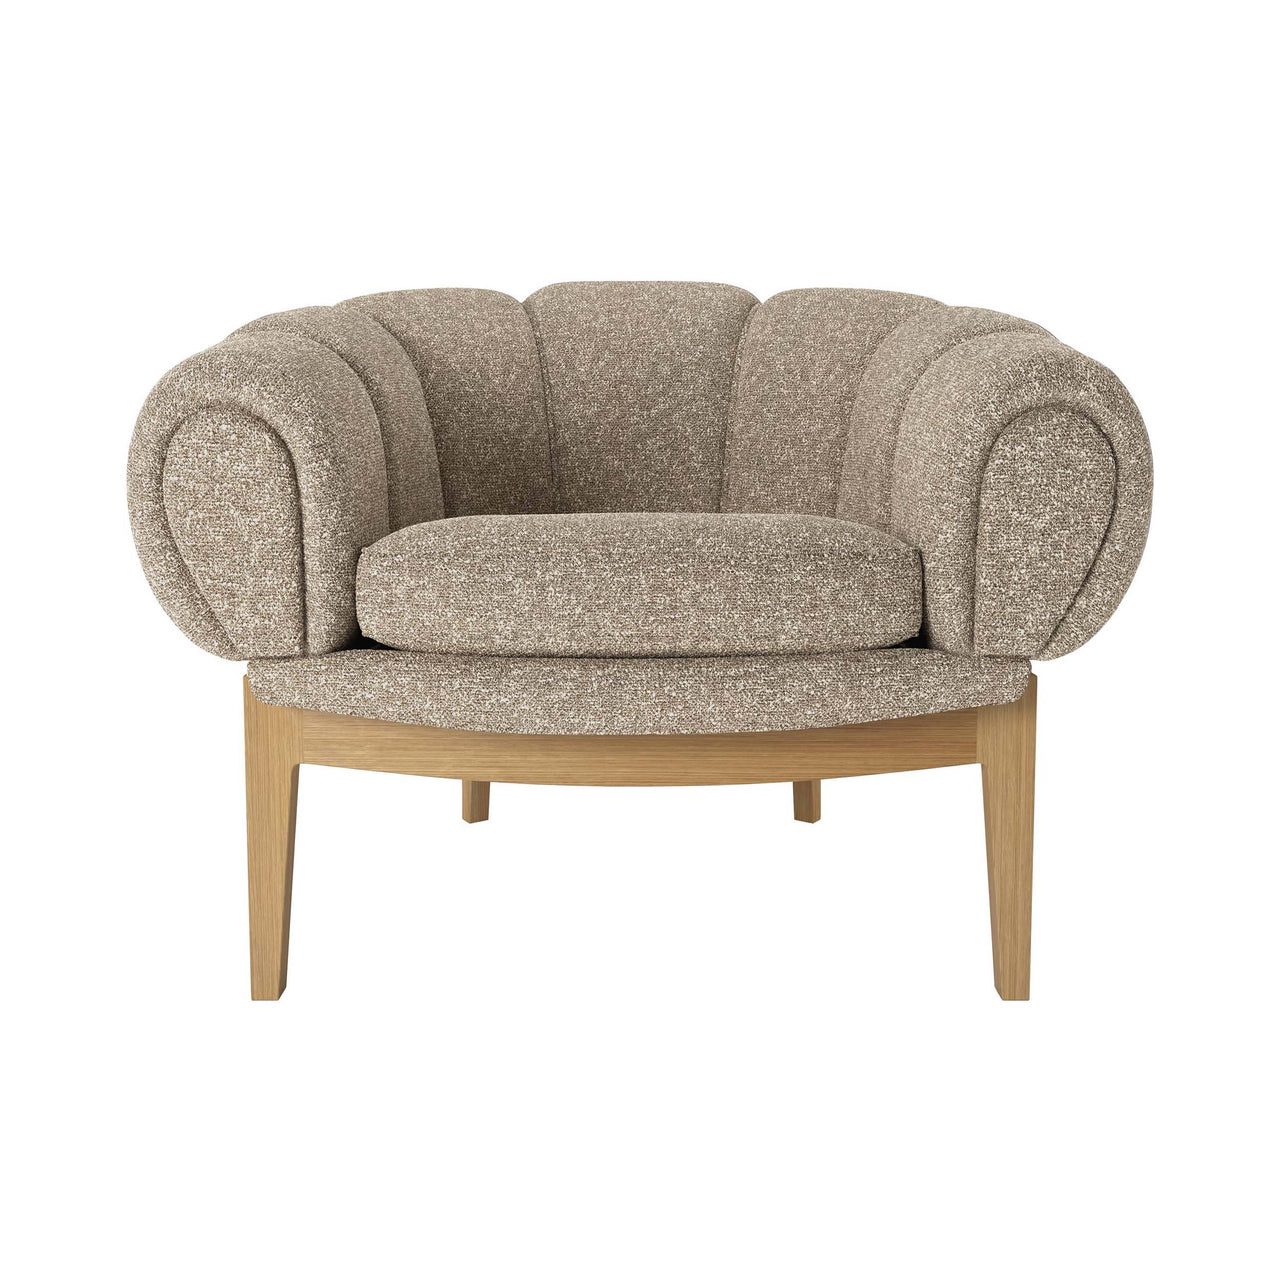 Croissant Lounge Chair: Solid Oak